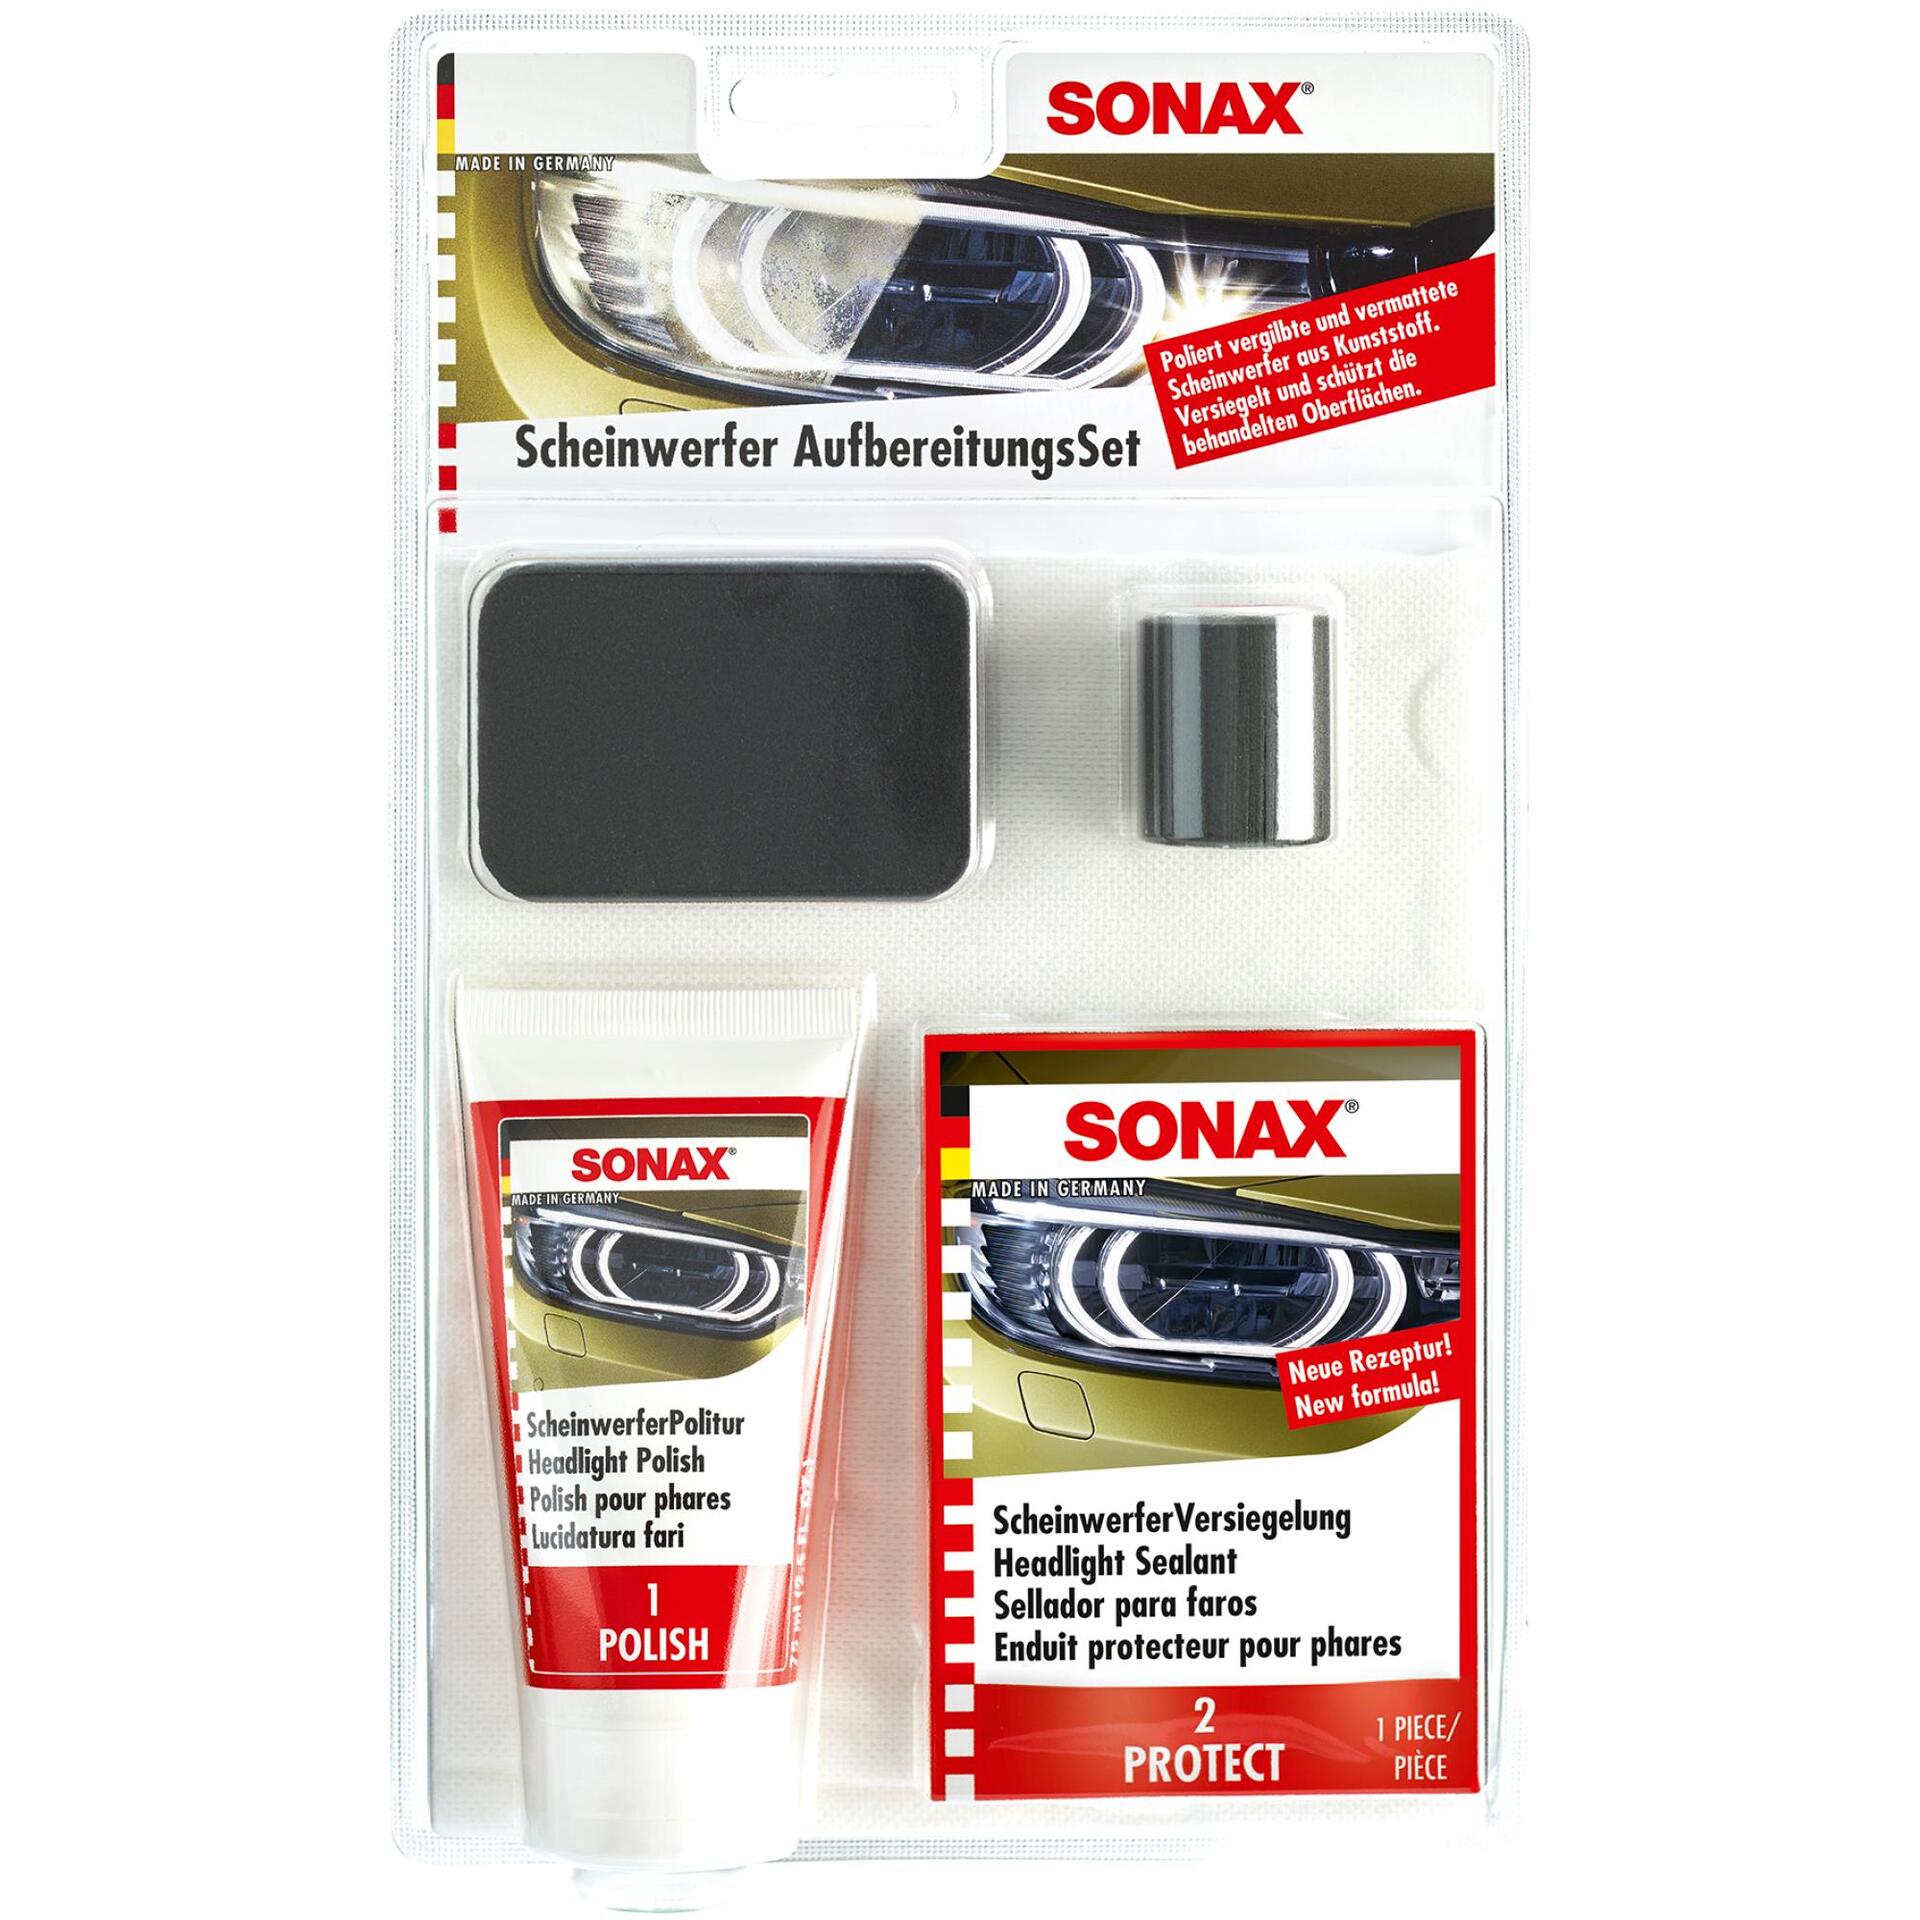 SONAX Scheinwerfer Aufbereitungs Set